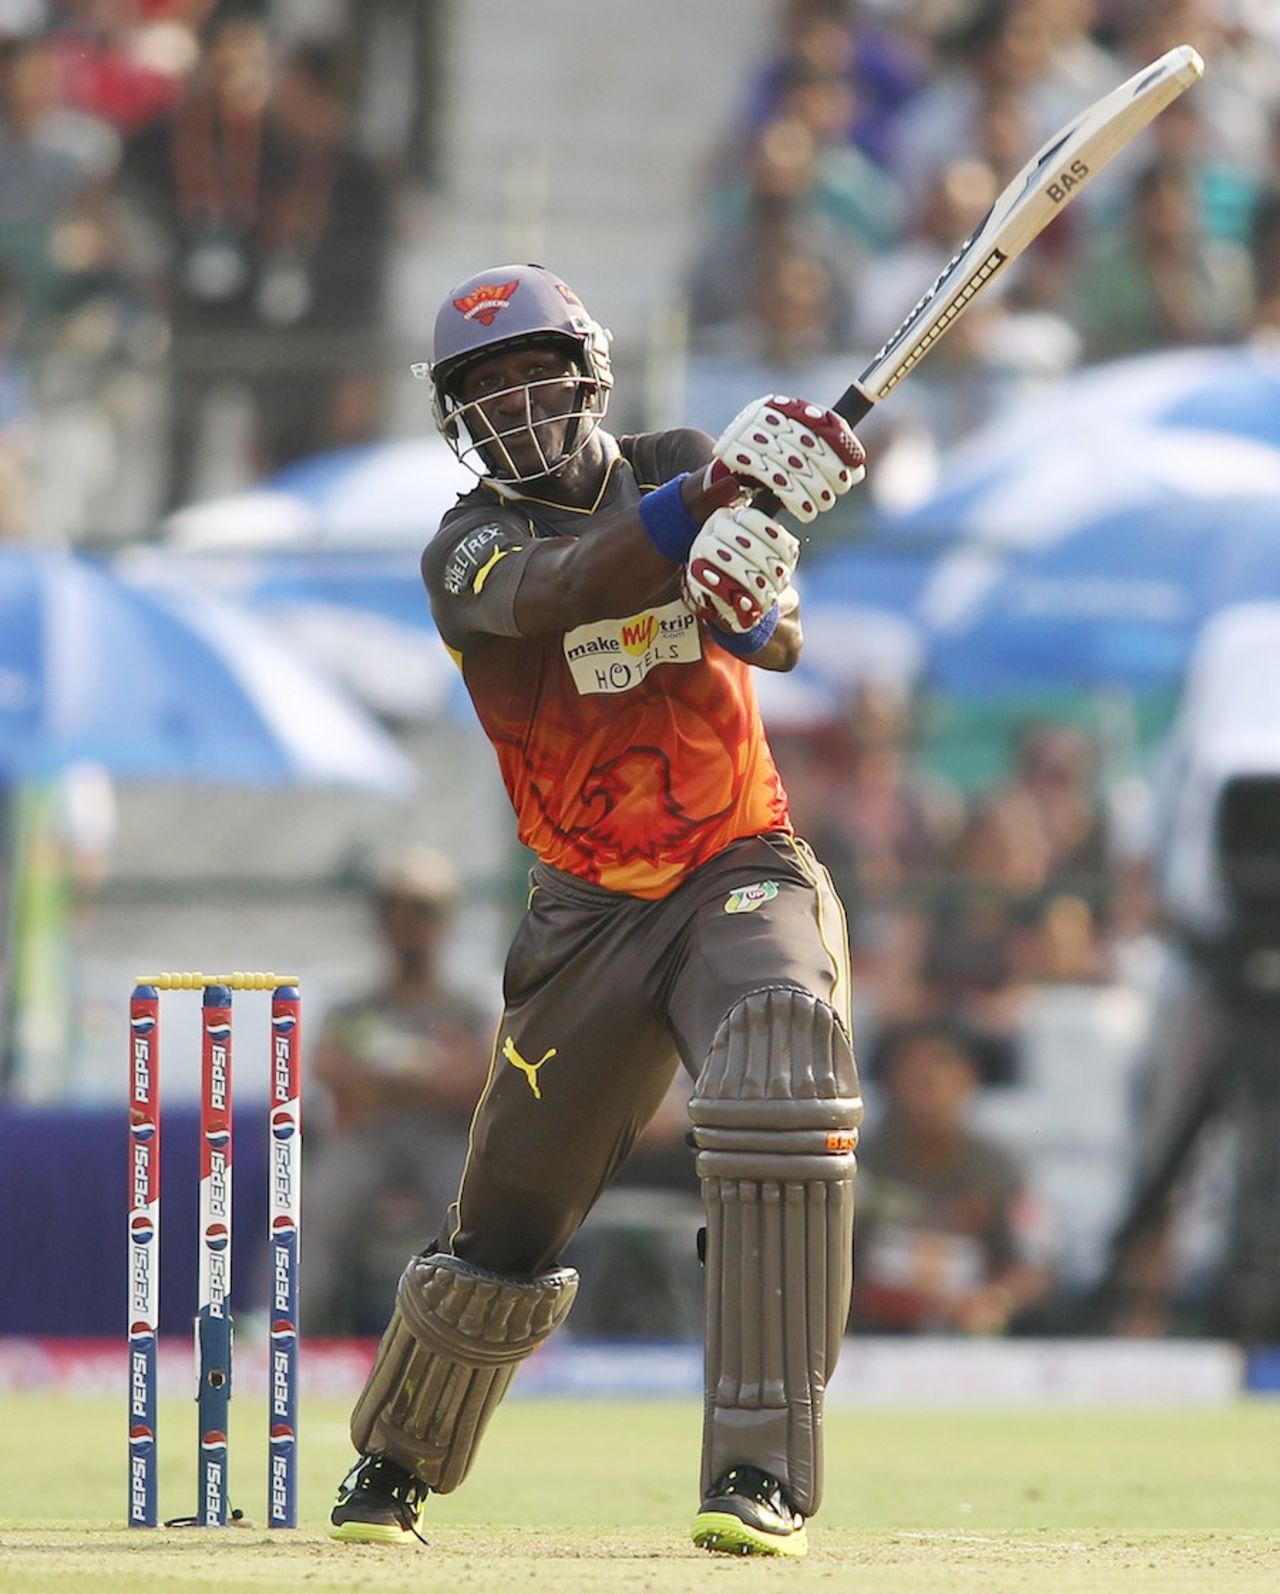 Darren Sammy scored 60 off 41 balls, Rajasthan Royals v Sunrisers Hyderabad, IPL, Jaipur, April 27, 2013